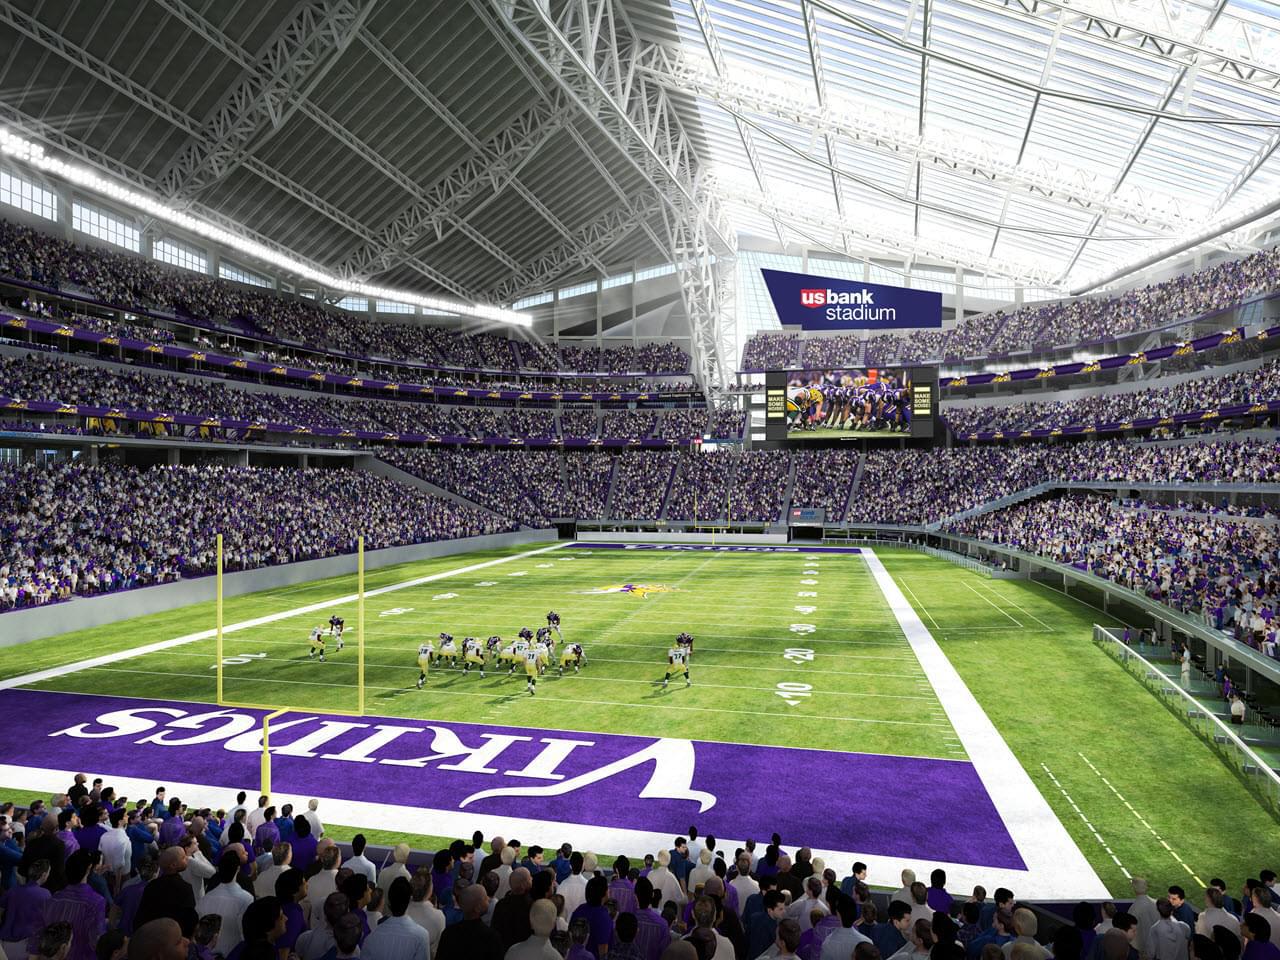 U.S. Bank Stadium Football Stadium Print, Minnesota Vikings Football